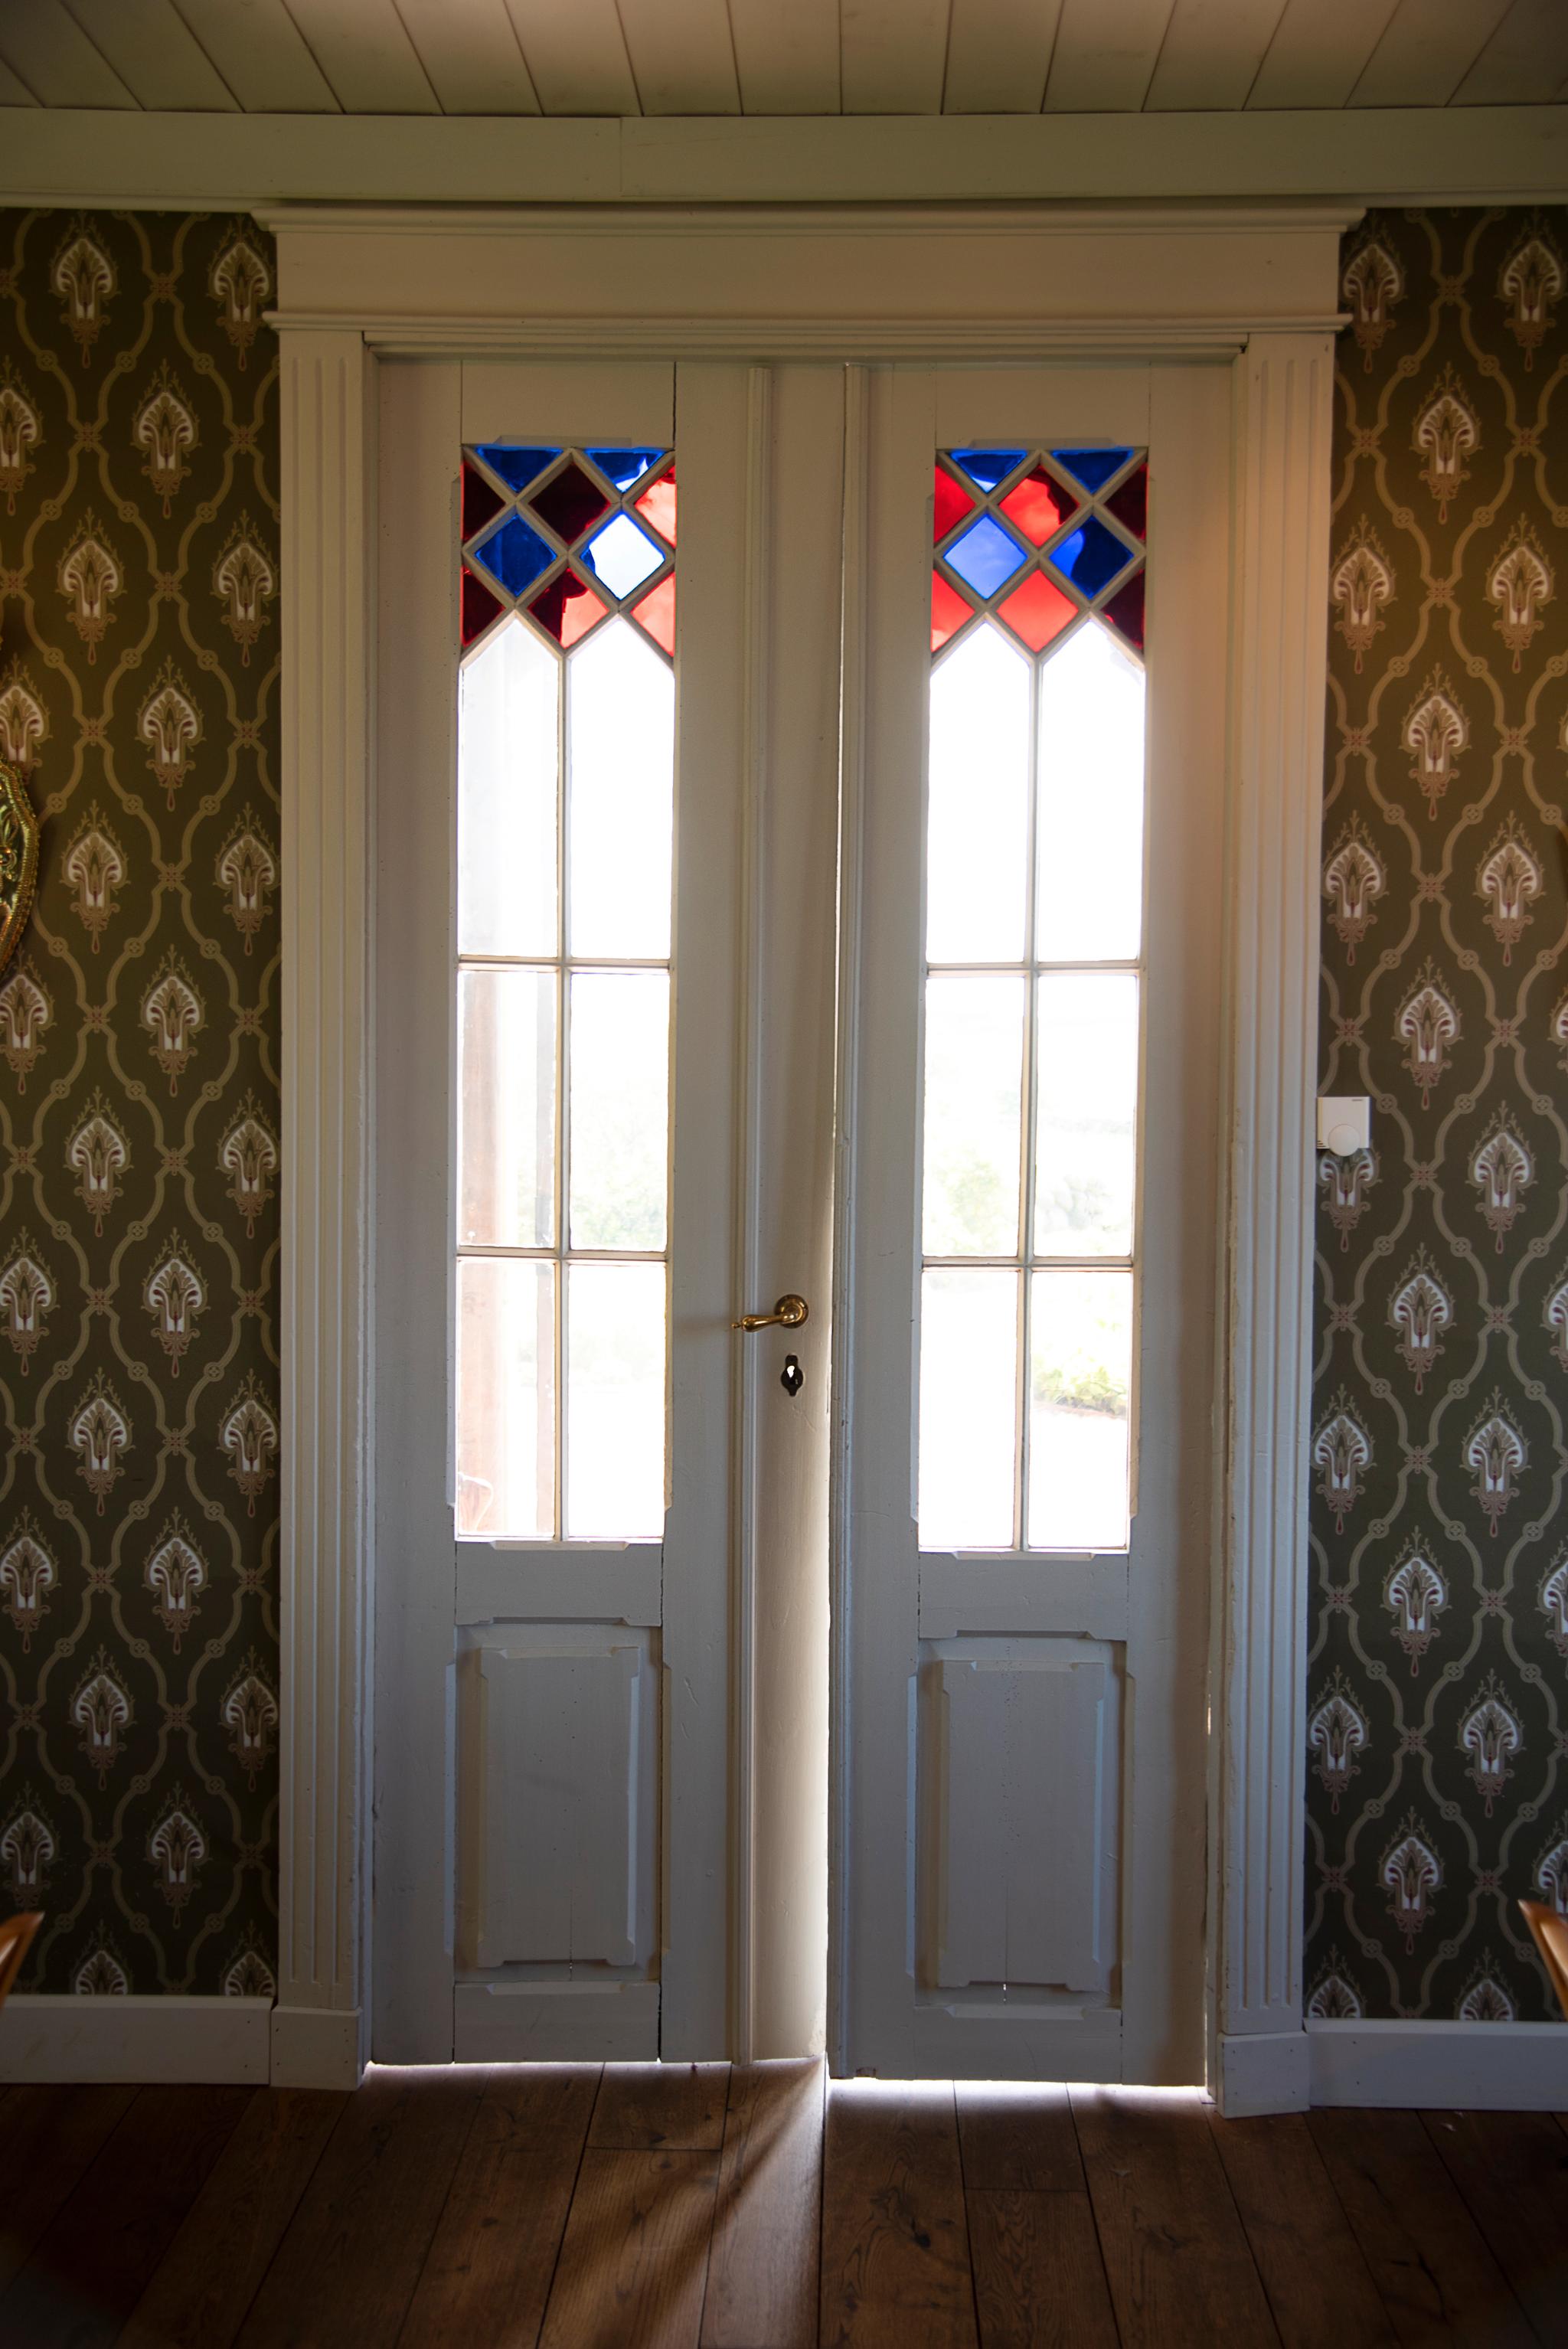 Det var ikke mye av det originale inventaret igjen i lysthuset, men de vakre dørene med farget glass var fortsatt intakt.